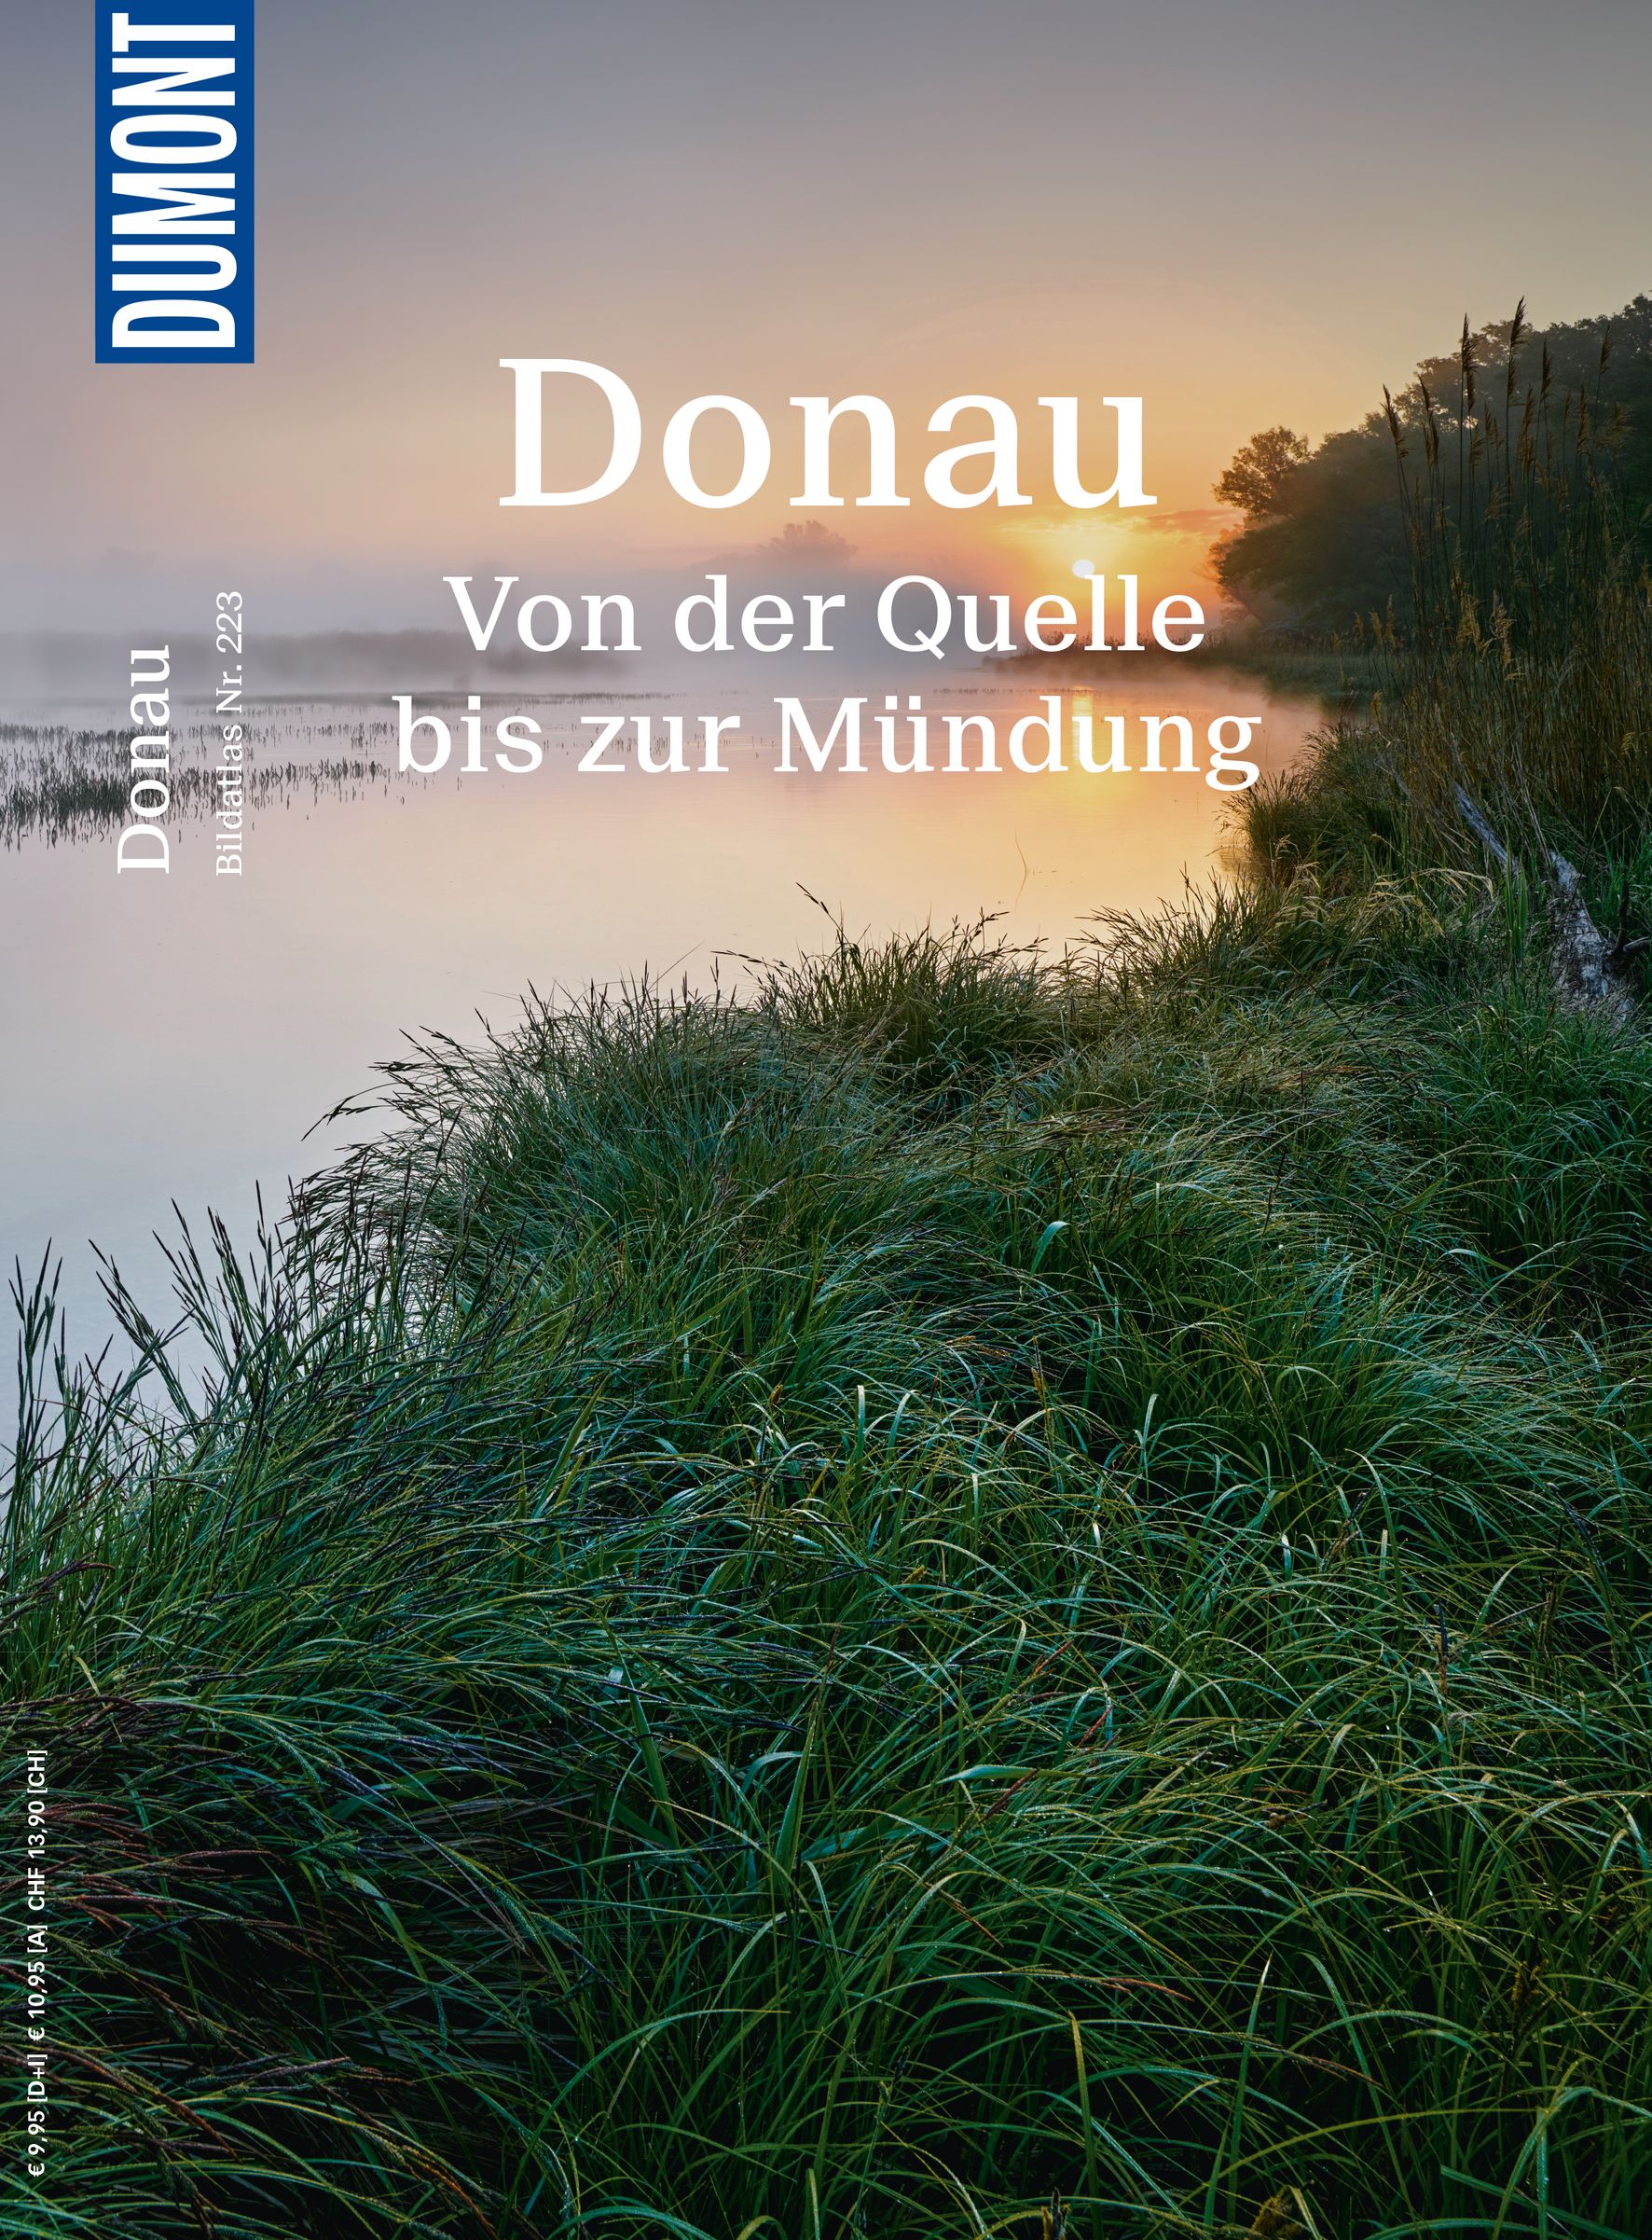 MAIRDUMONT Donau (eBook)